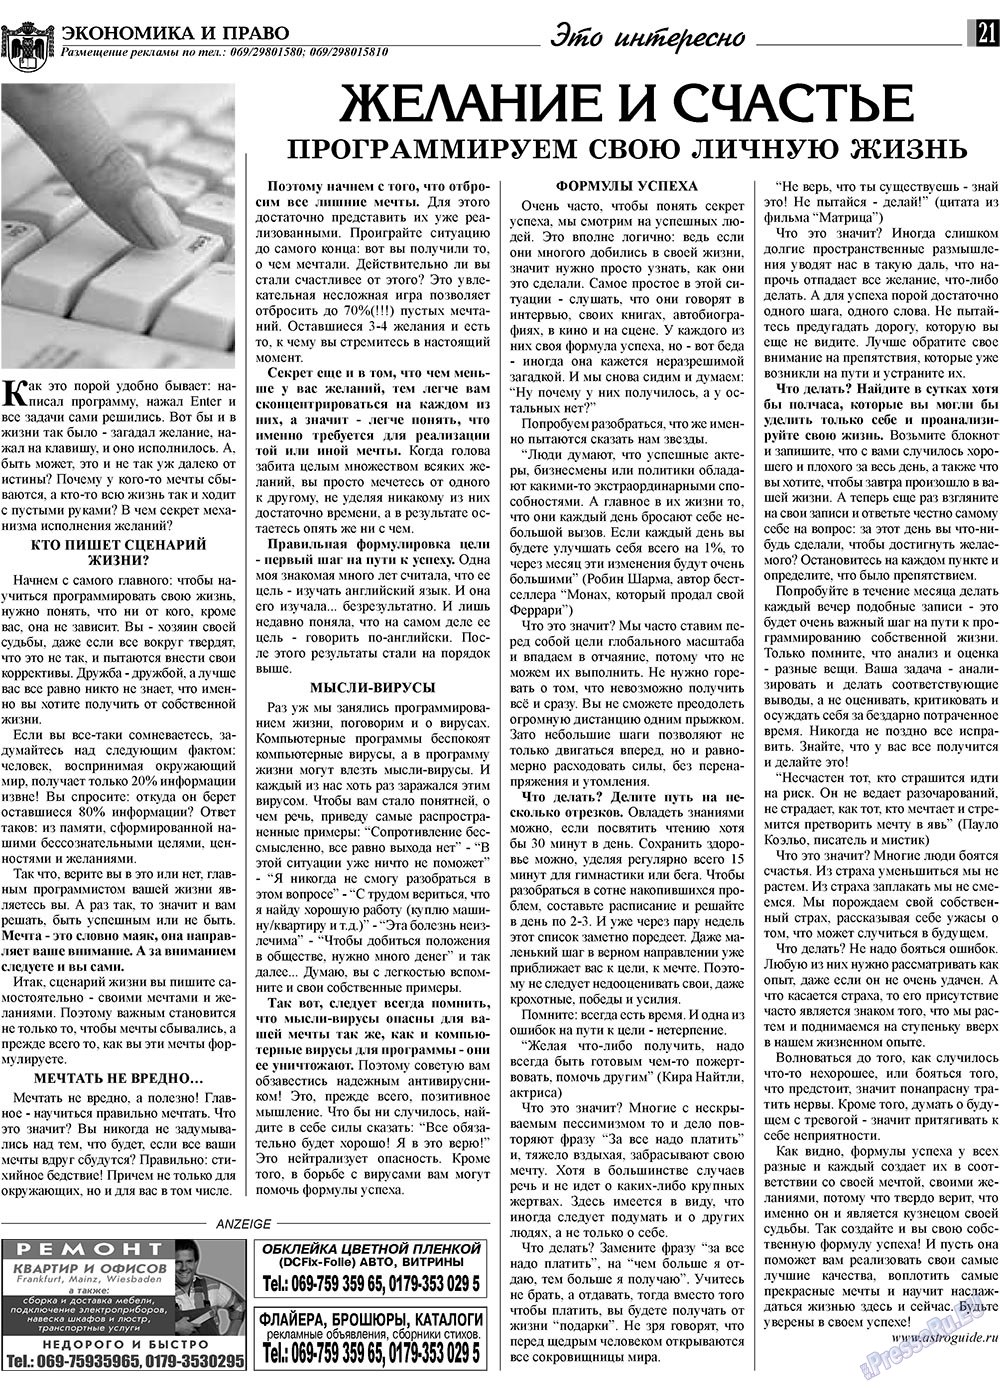 Экономика и право, газета. 2009 №7 стр.21